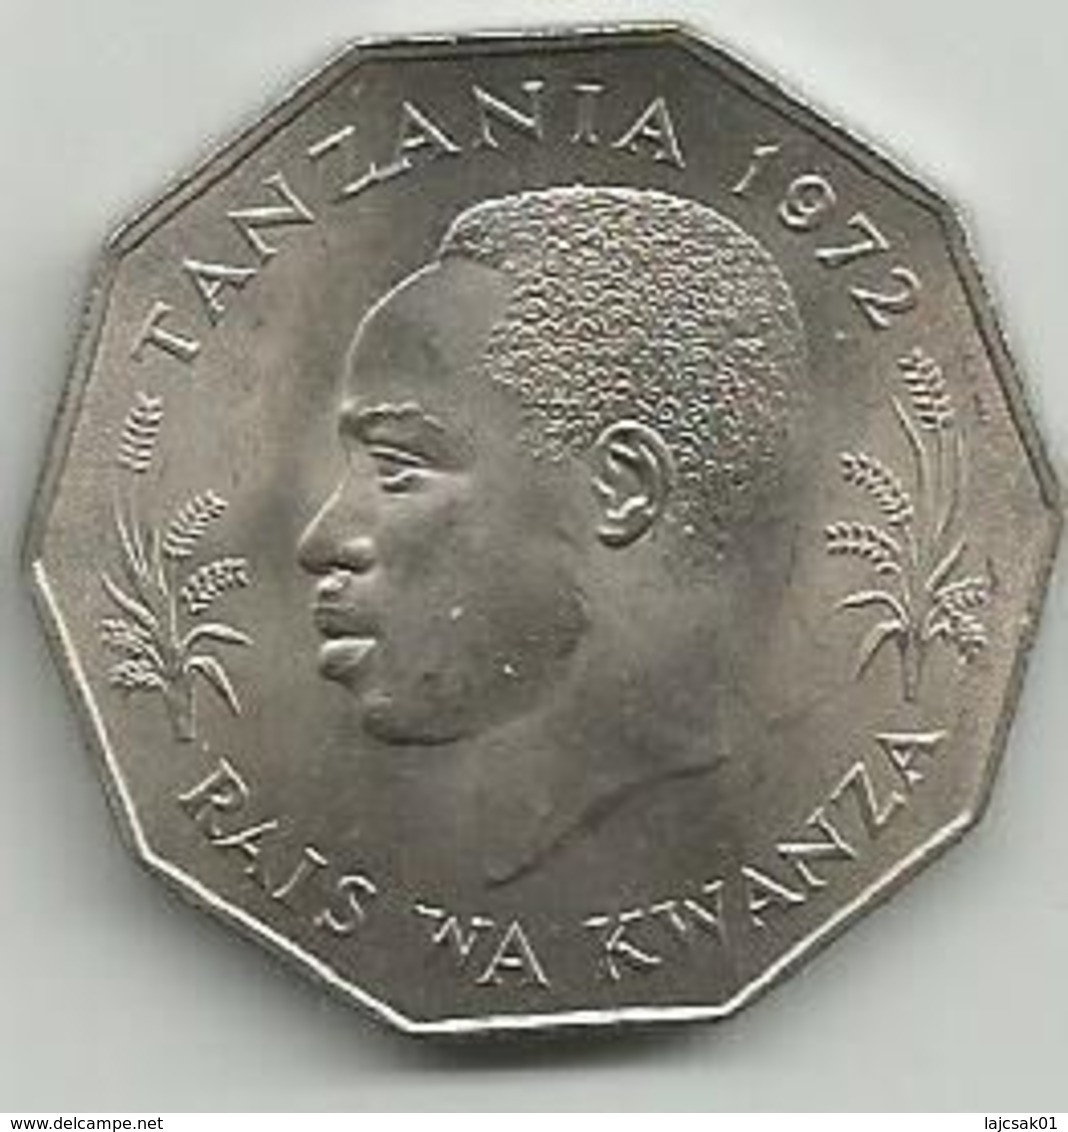 Tanzania 5 Shilingi 1972. FAO KM#6 High Grade - Tansania